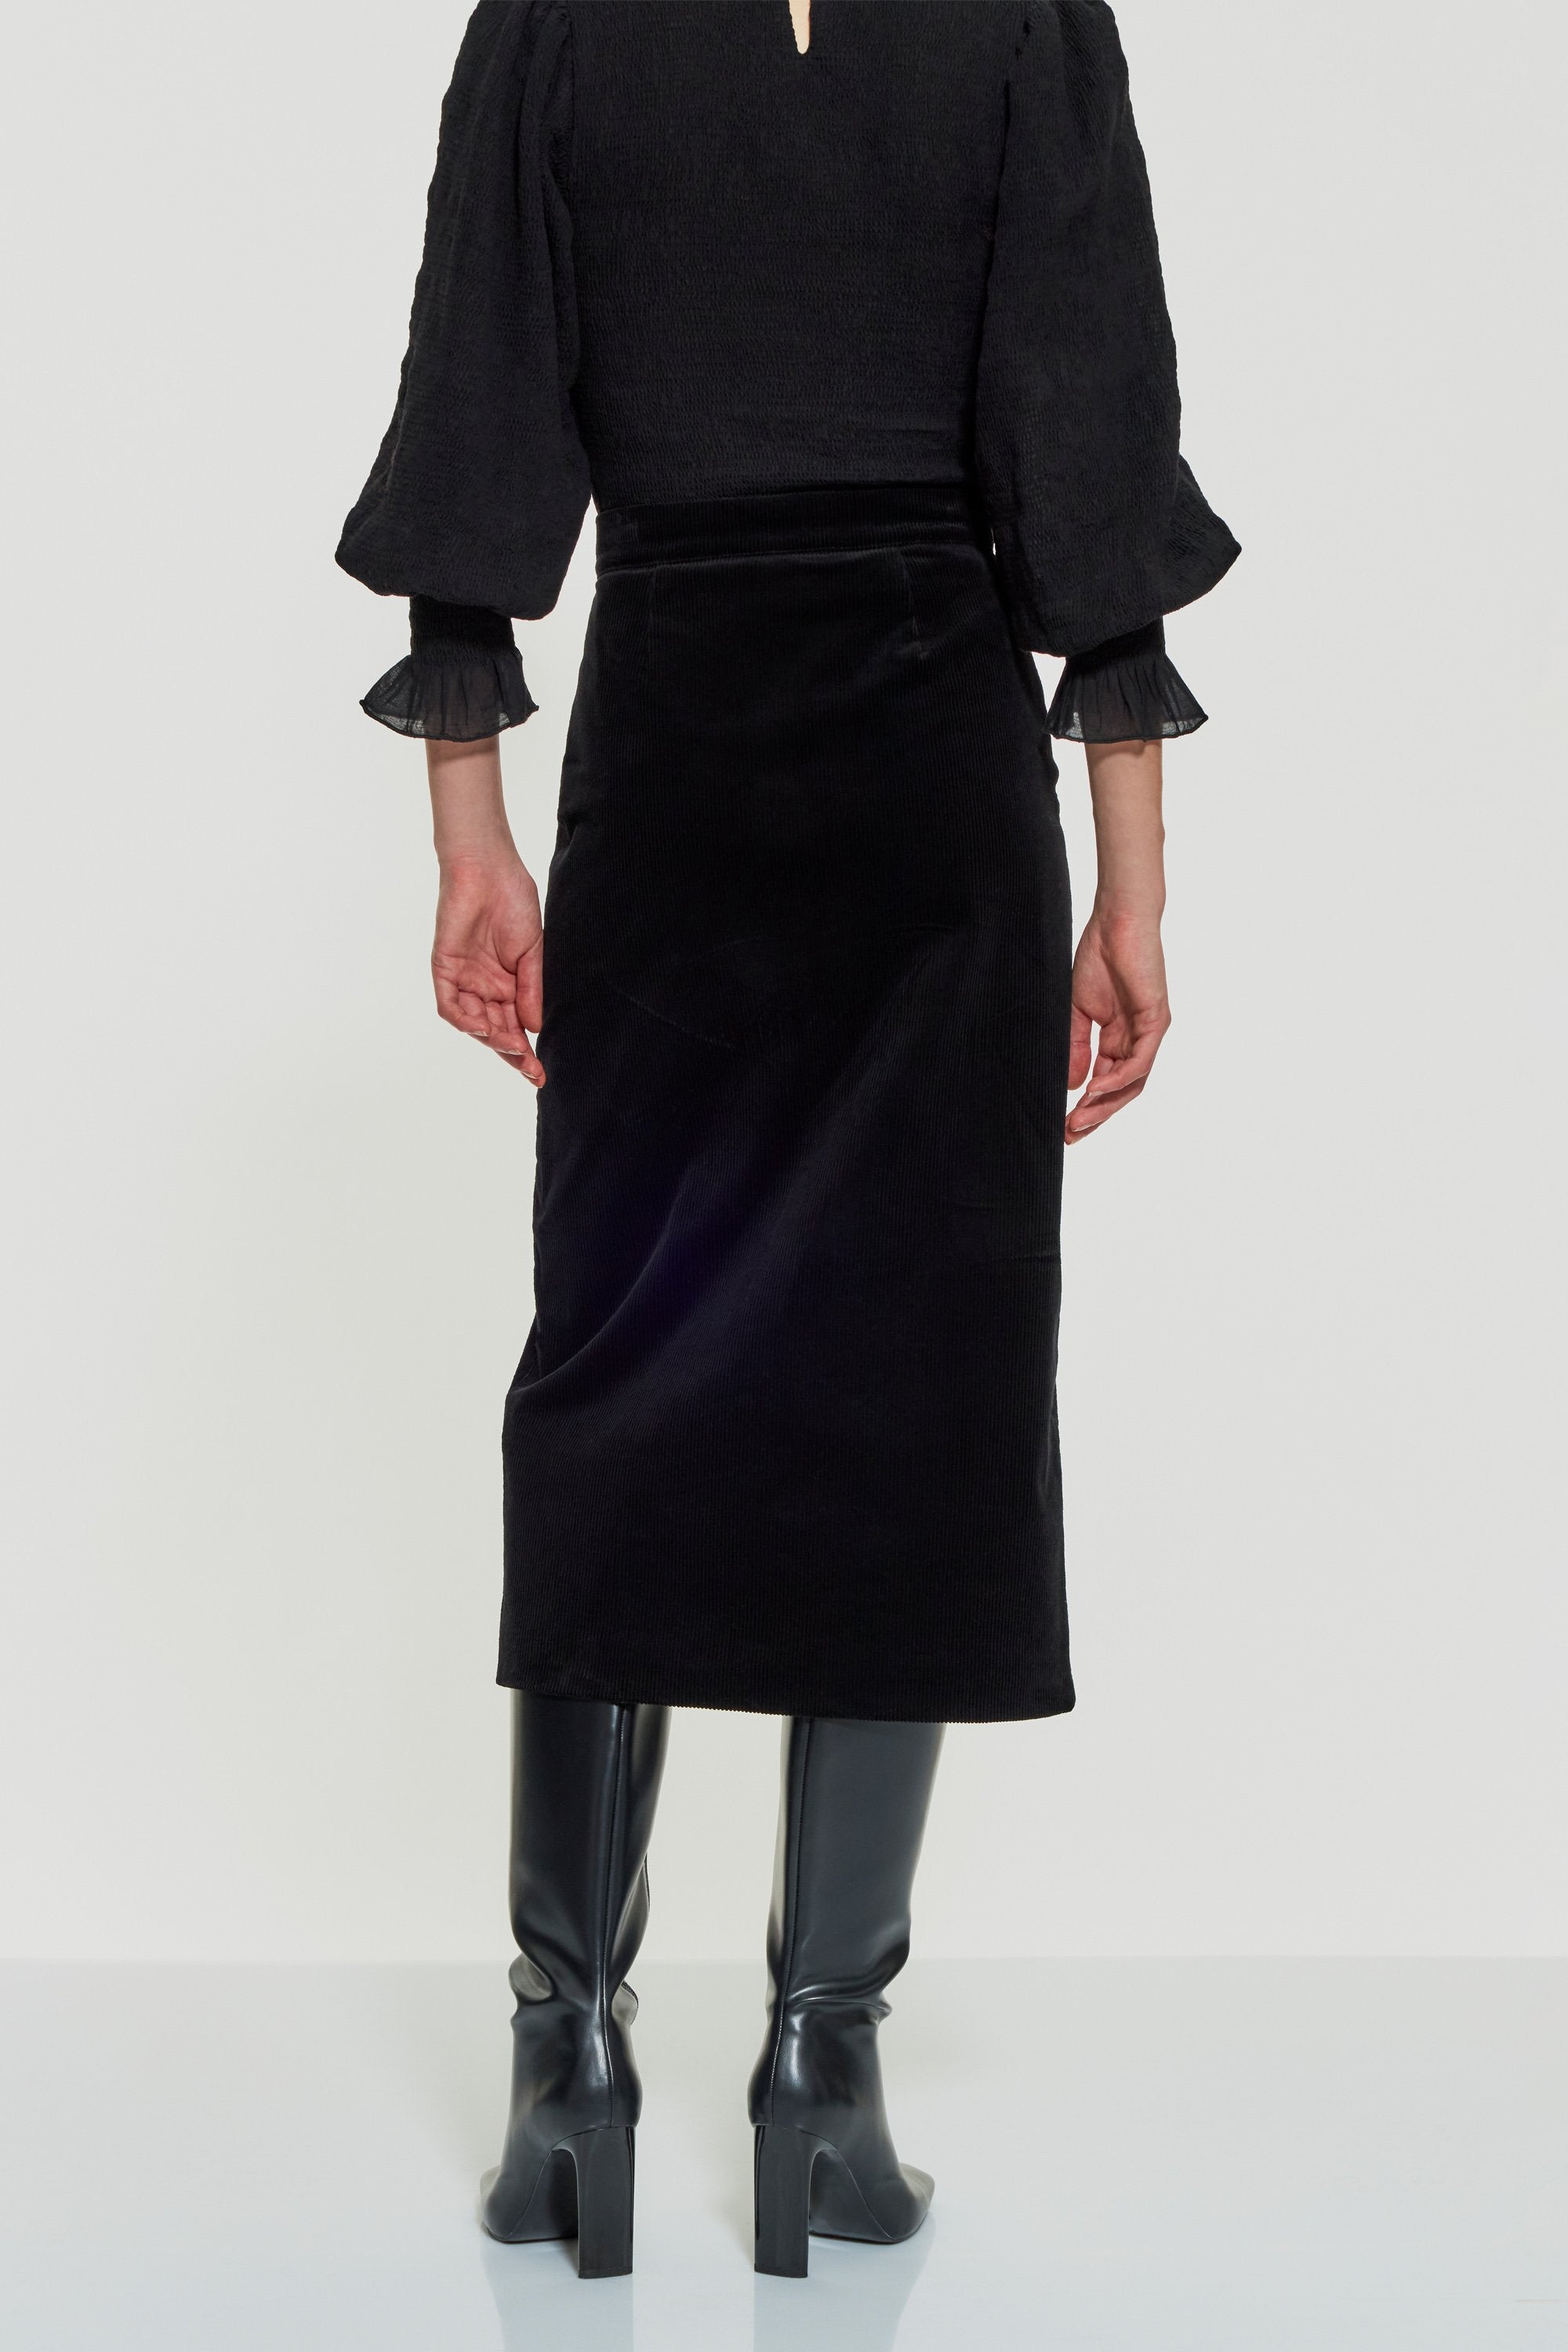 Tilda Skirt in Black